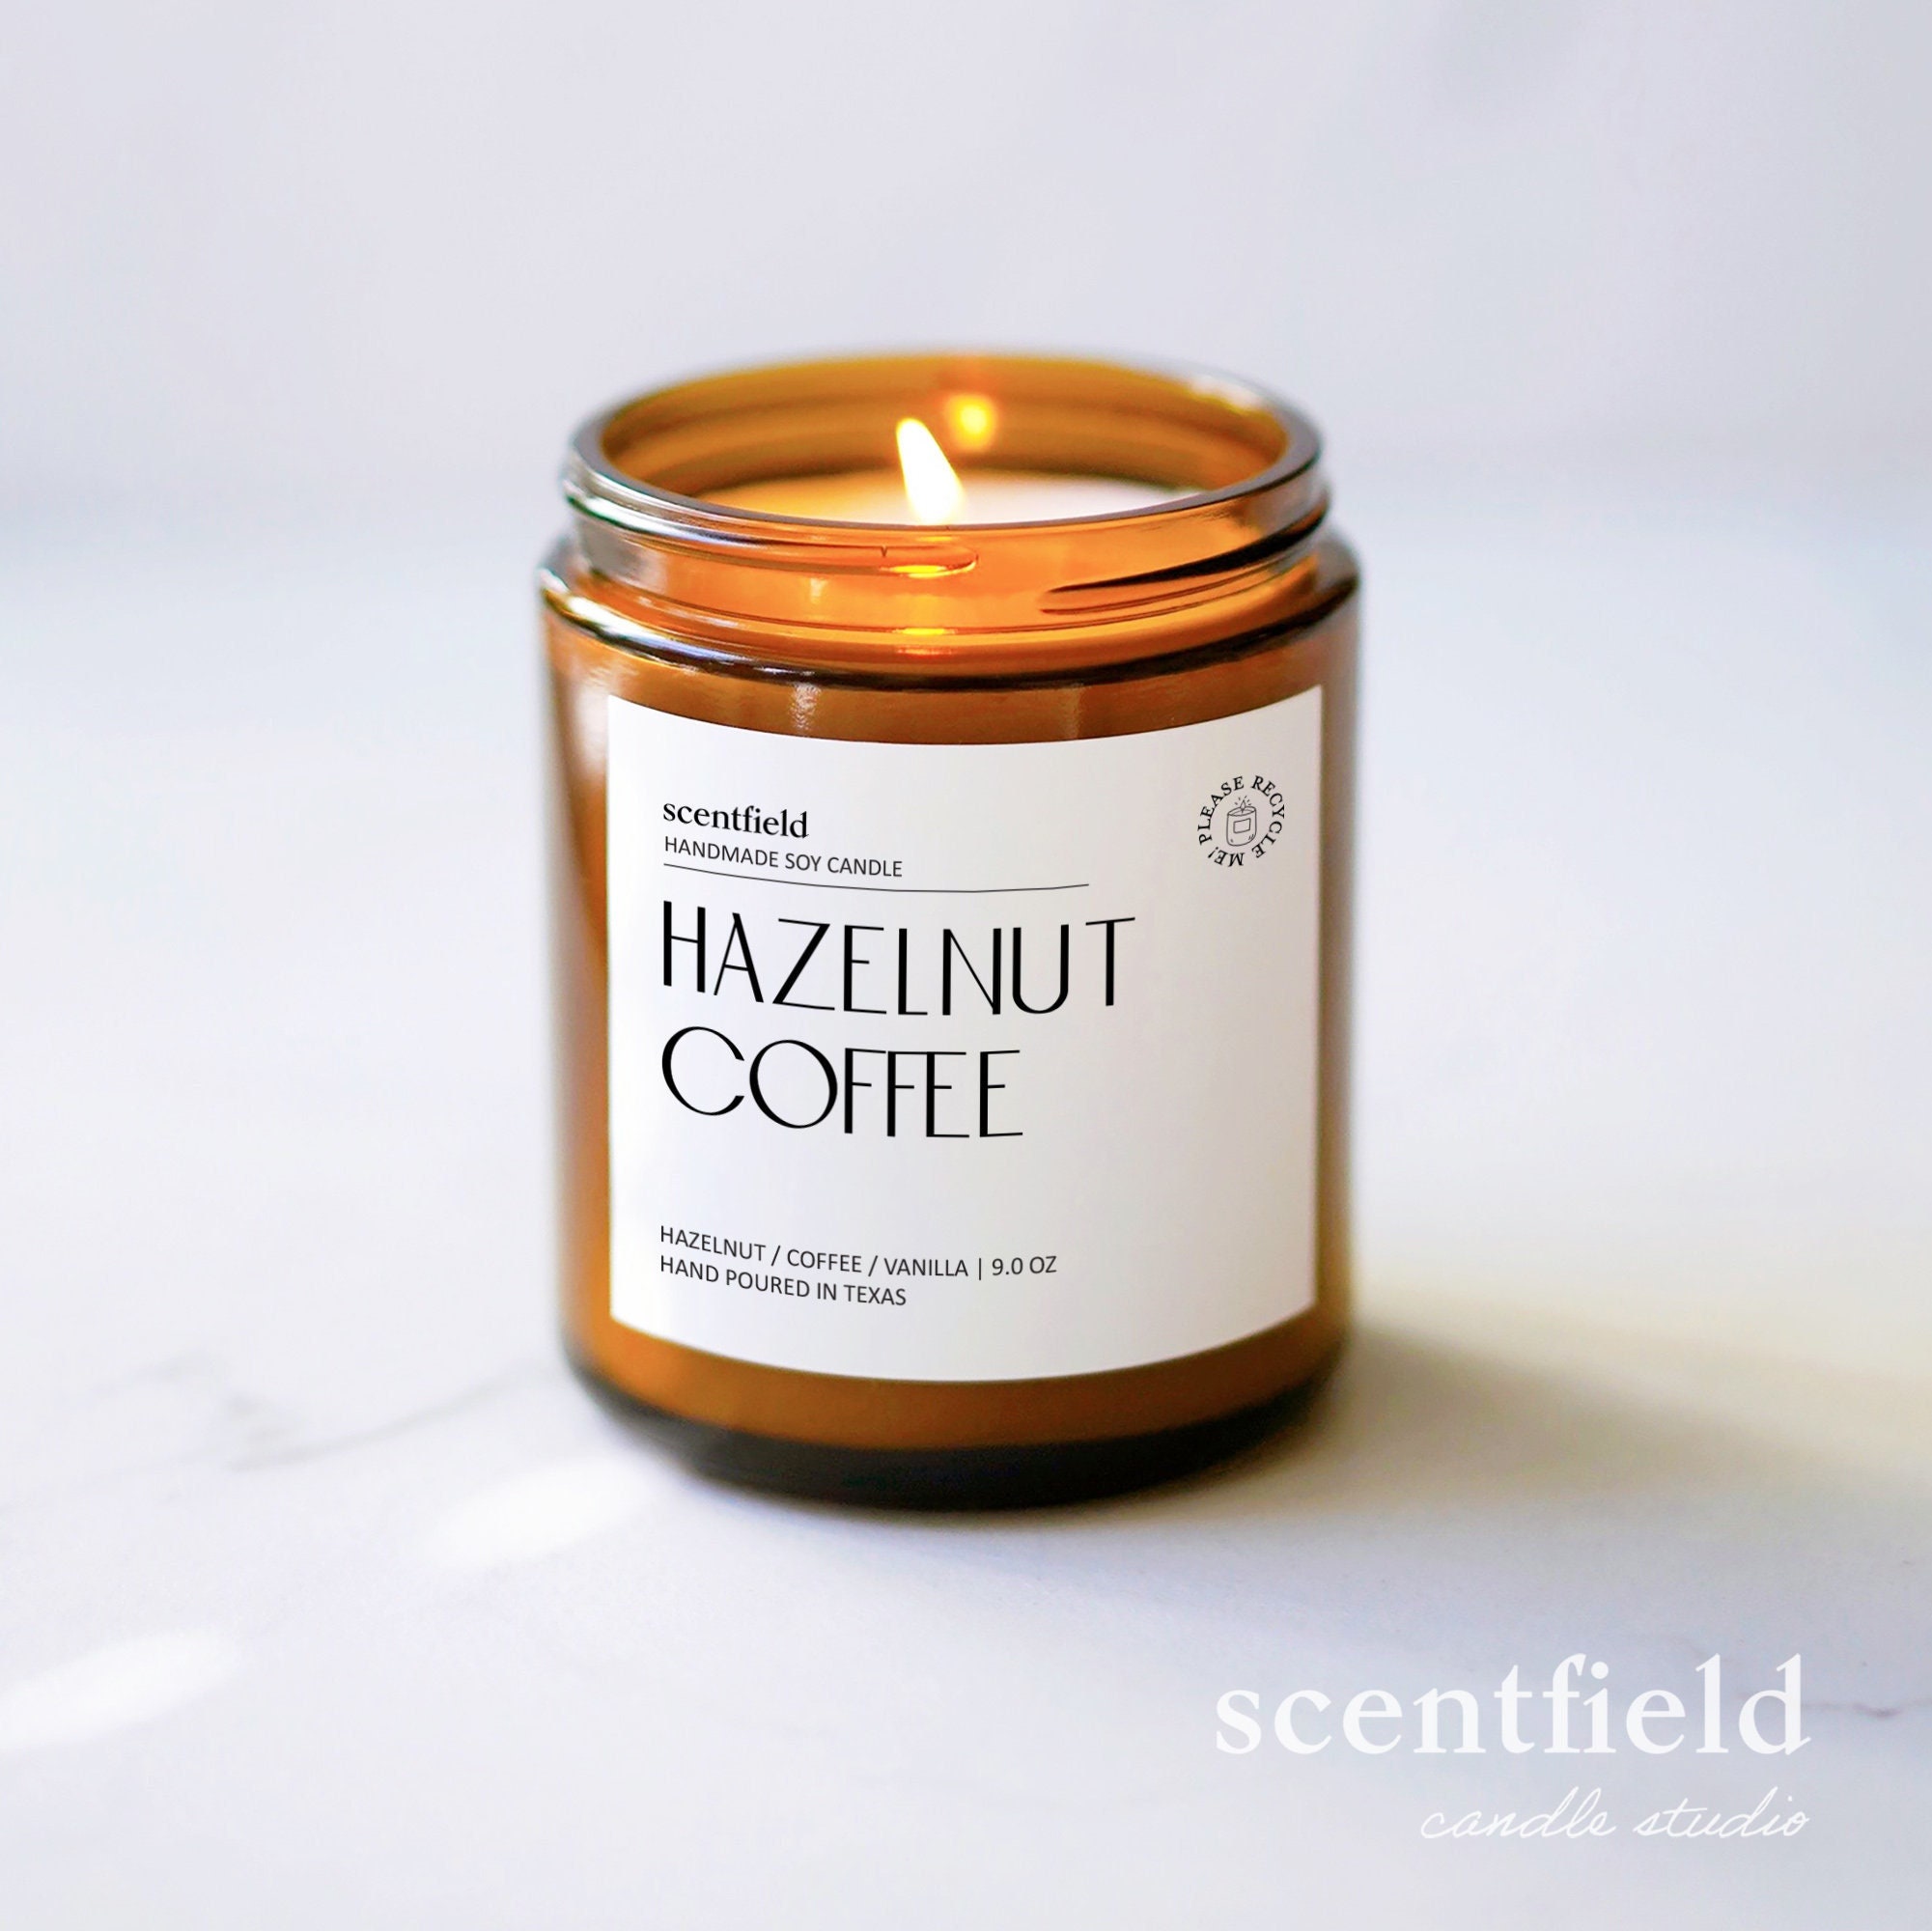 Hazelnut Coffee Soy Wax Melt